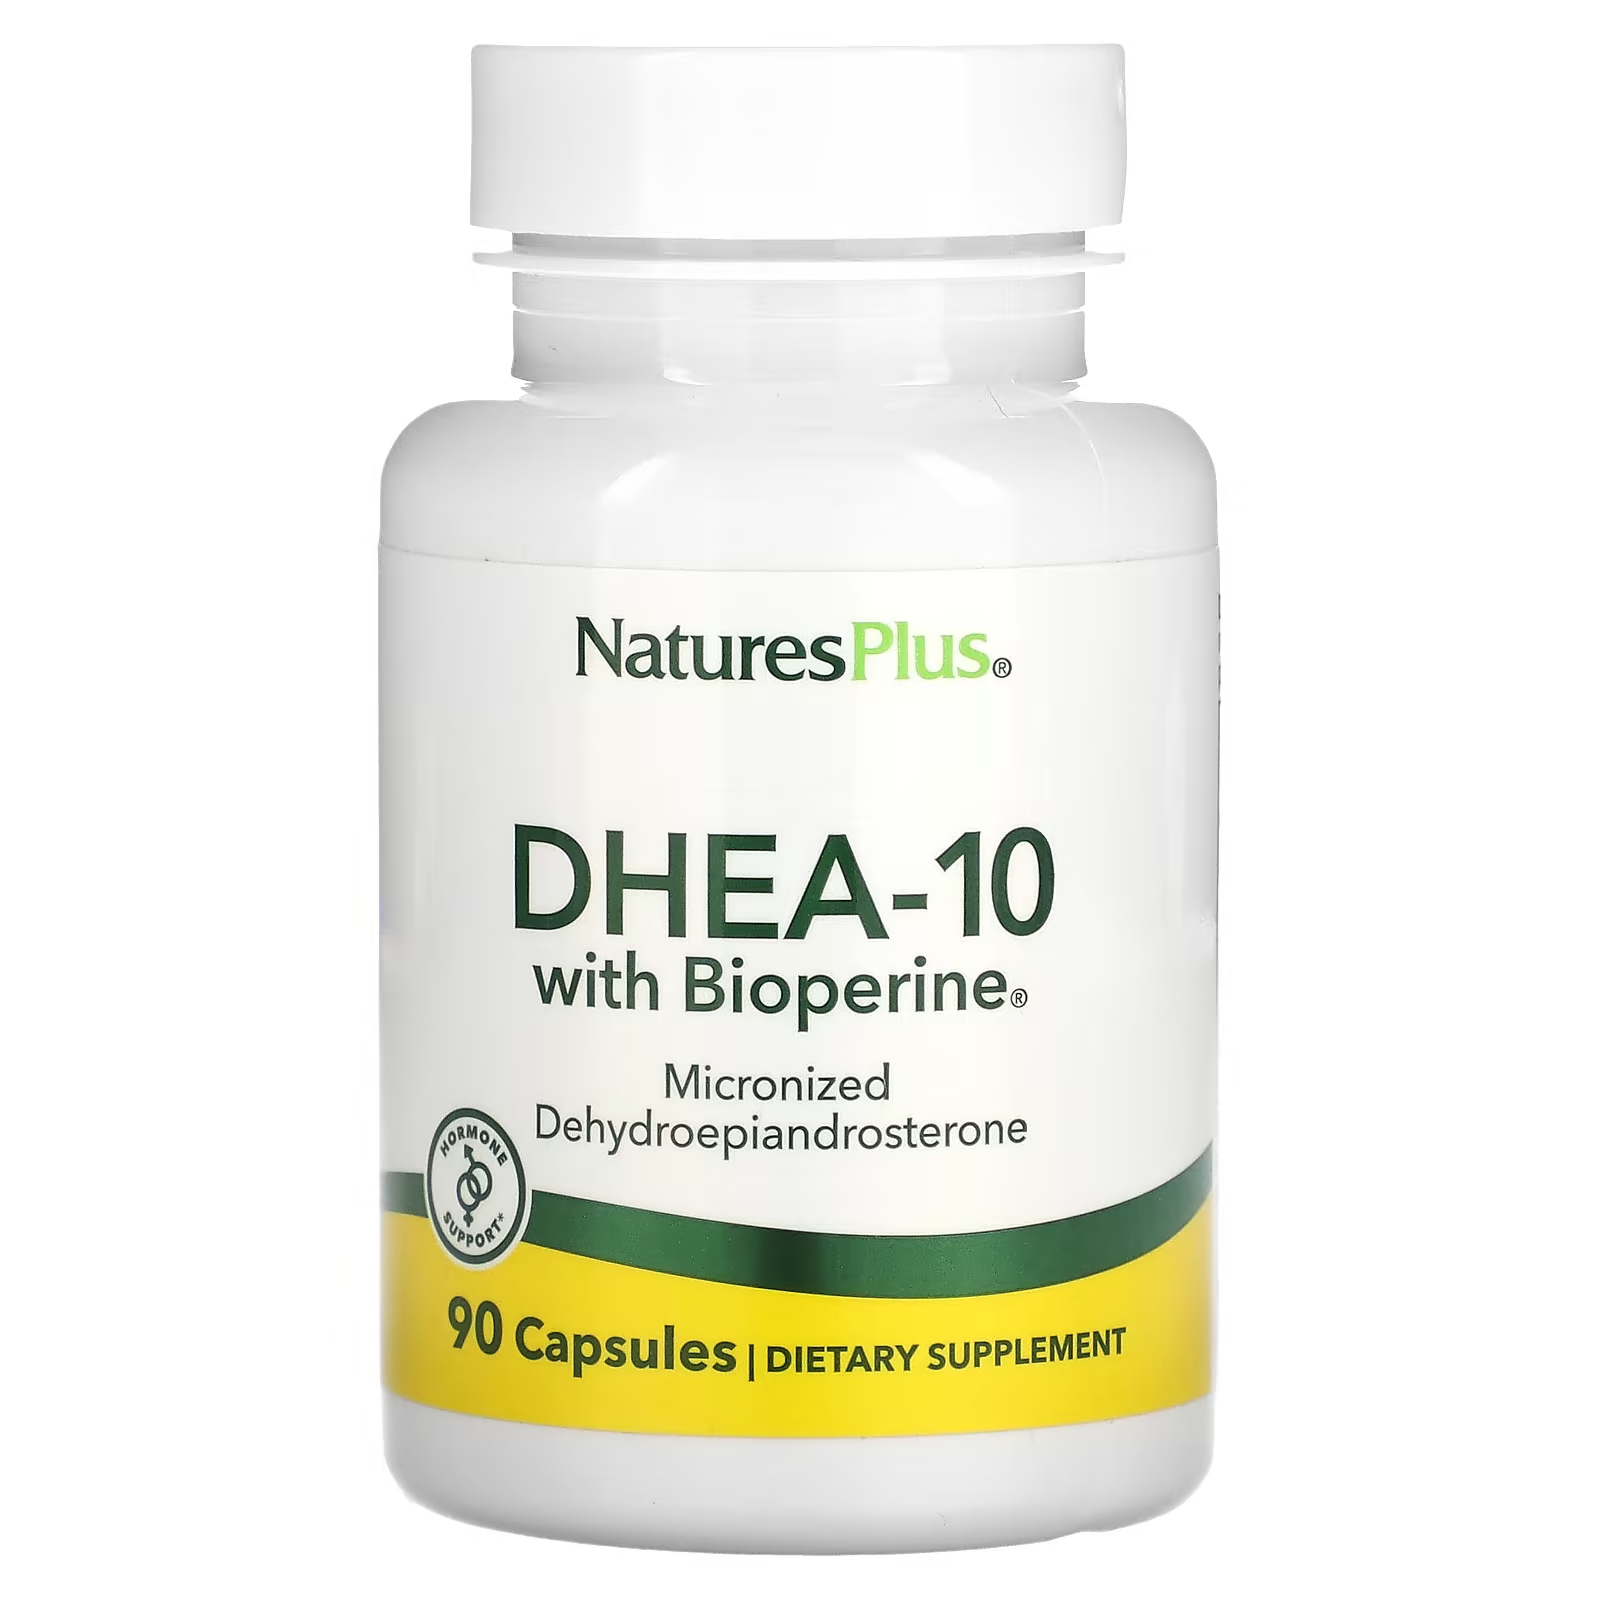 Пищевая добавка NaturesPlus ДГЭА-10 с биоперином, 90 капсул дгэа с биоперином smnutrition 50 мг 90 капсул